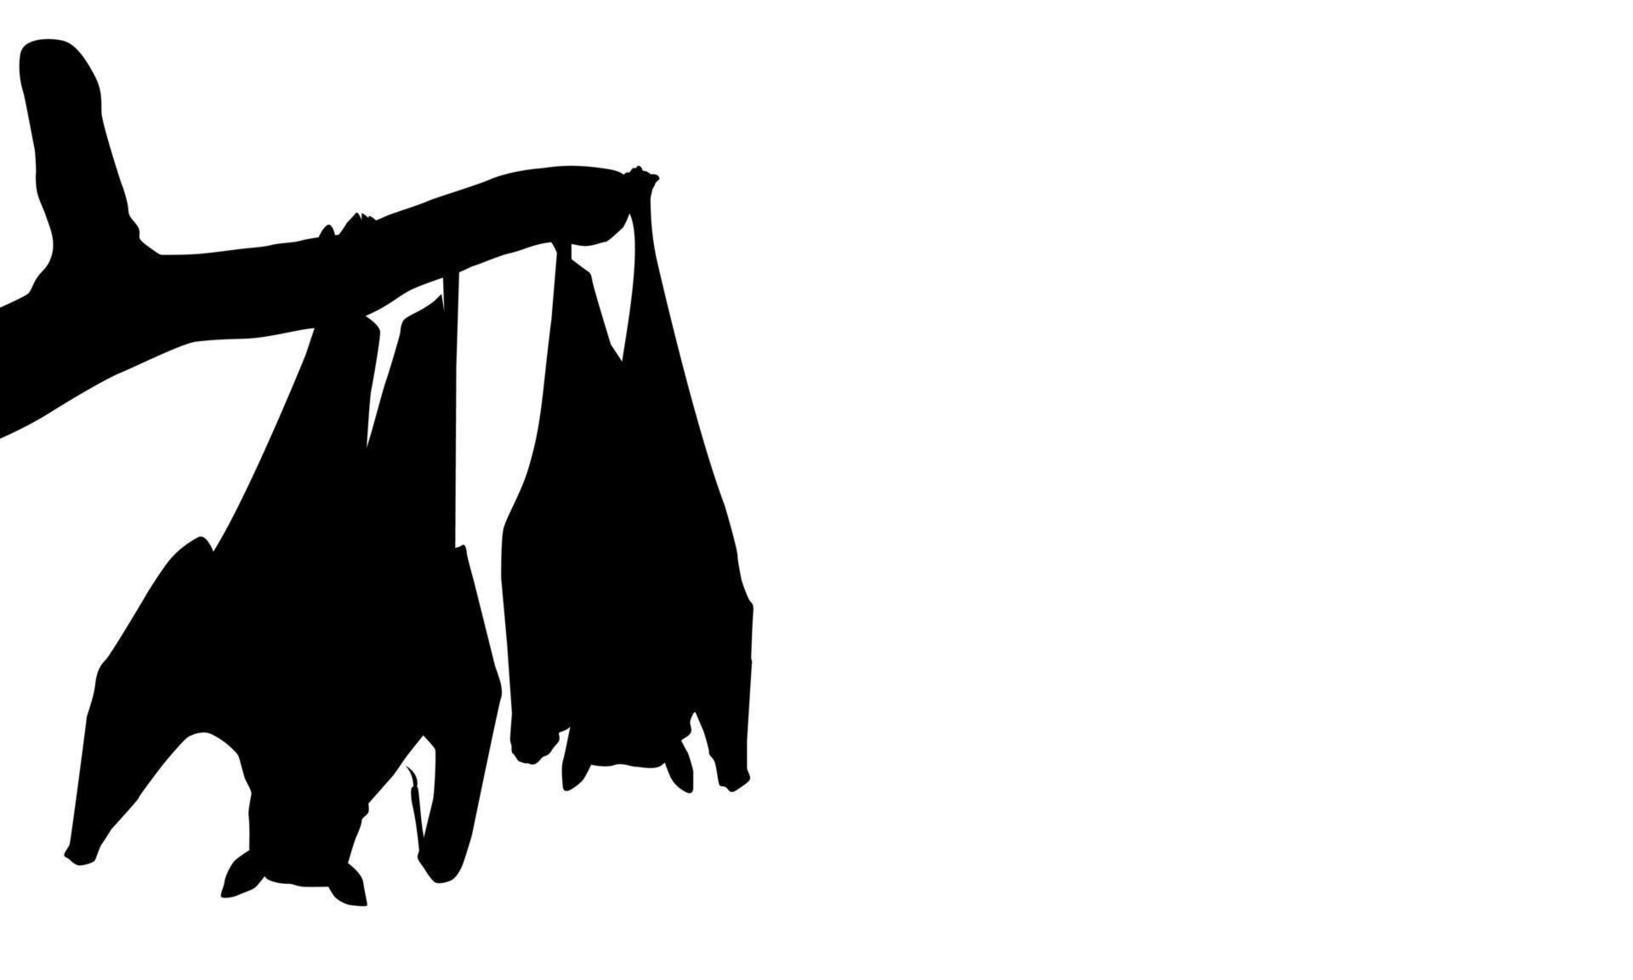 schlafende Fledermaus auf der Astbaumsilhouette für Halloween-Poster, Kunstillustration, Horrorfilm oder Filmposter für Grafikdesign-Element. Vektor-Illustration vektor